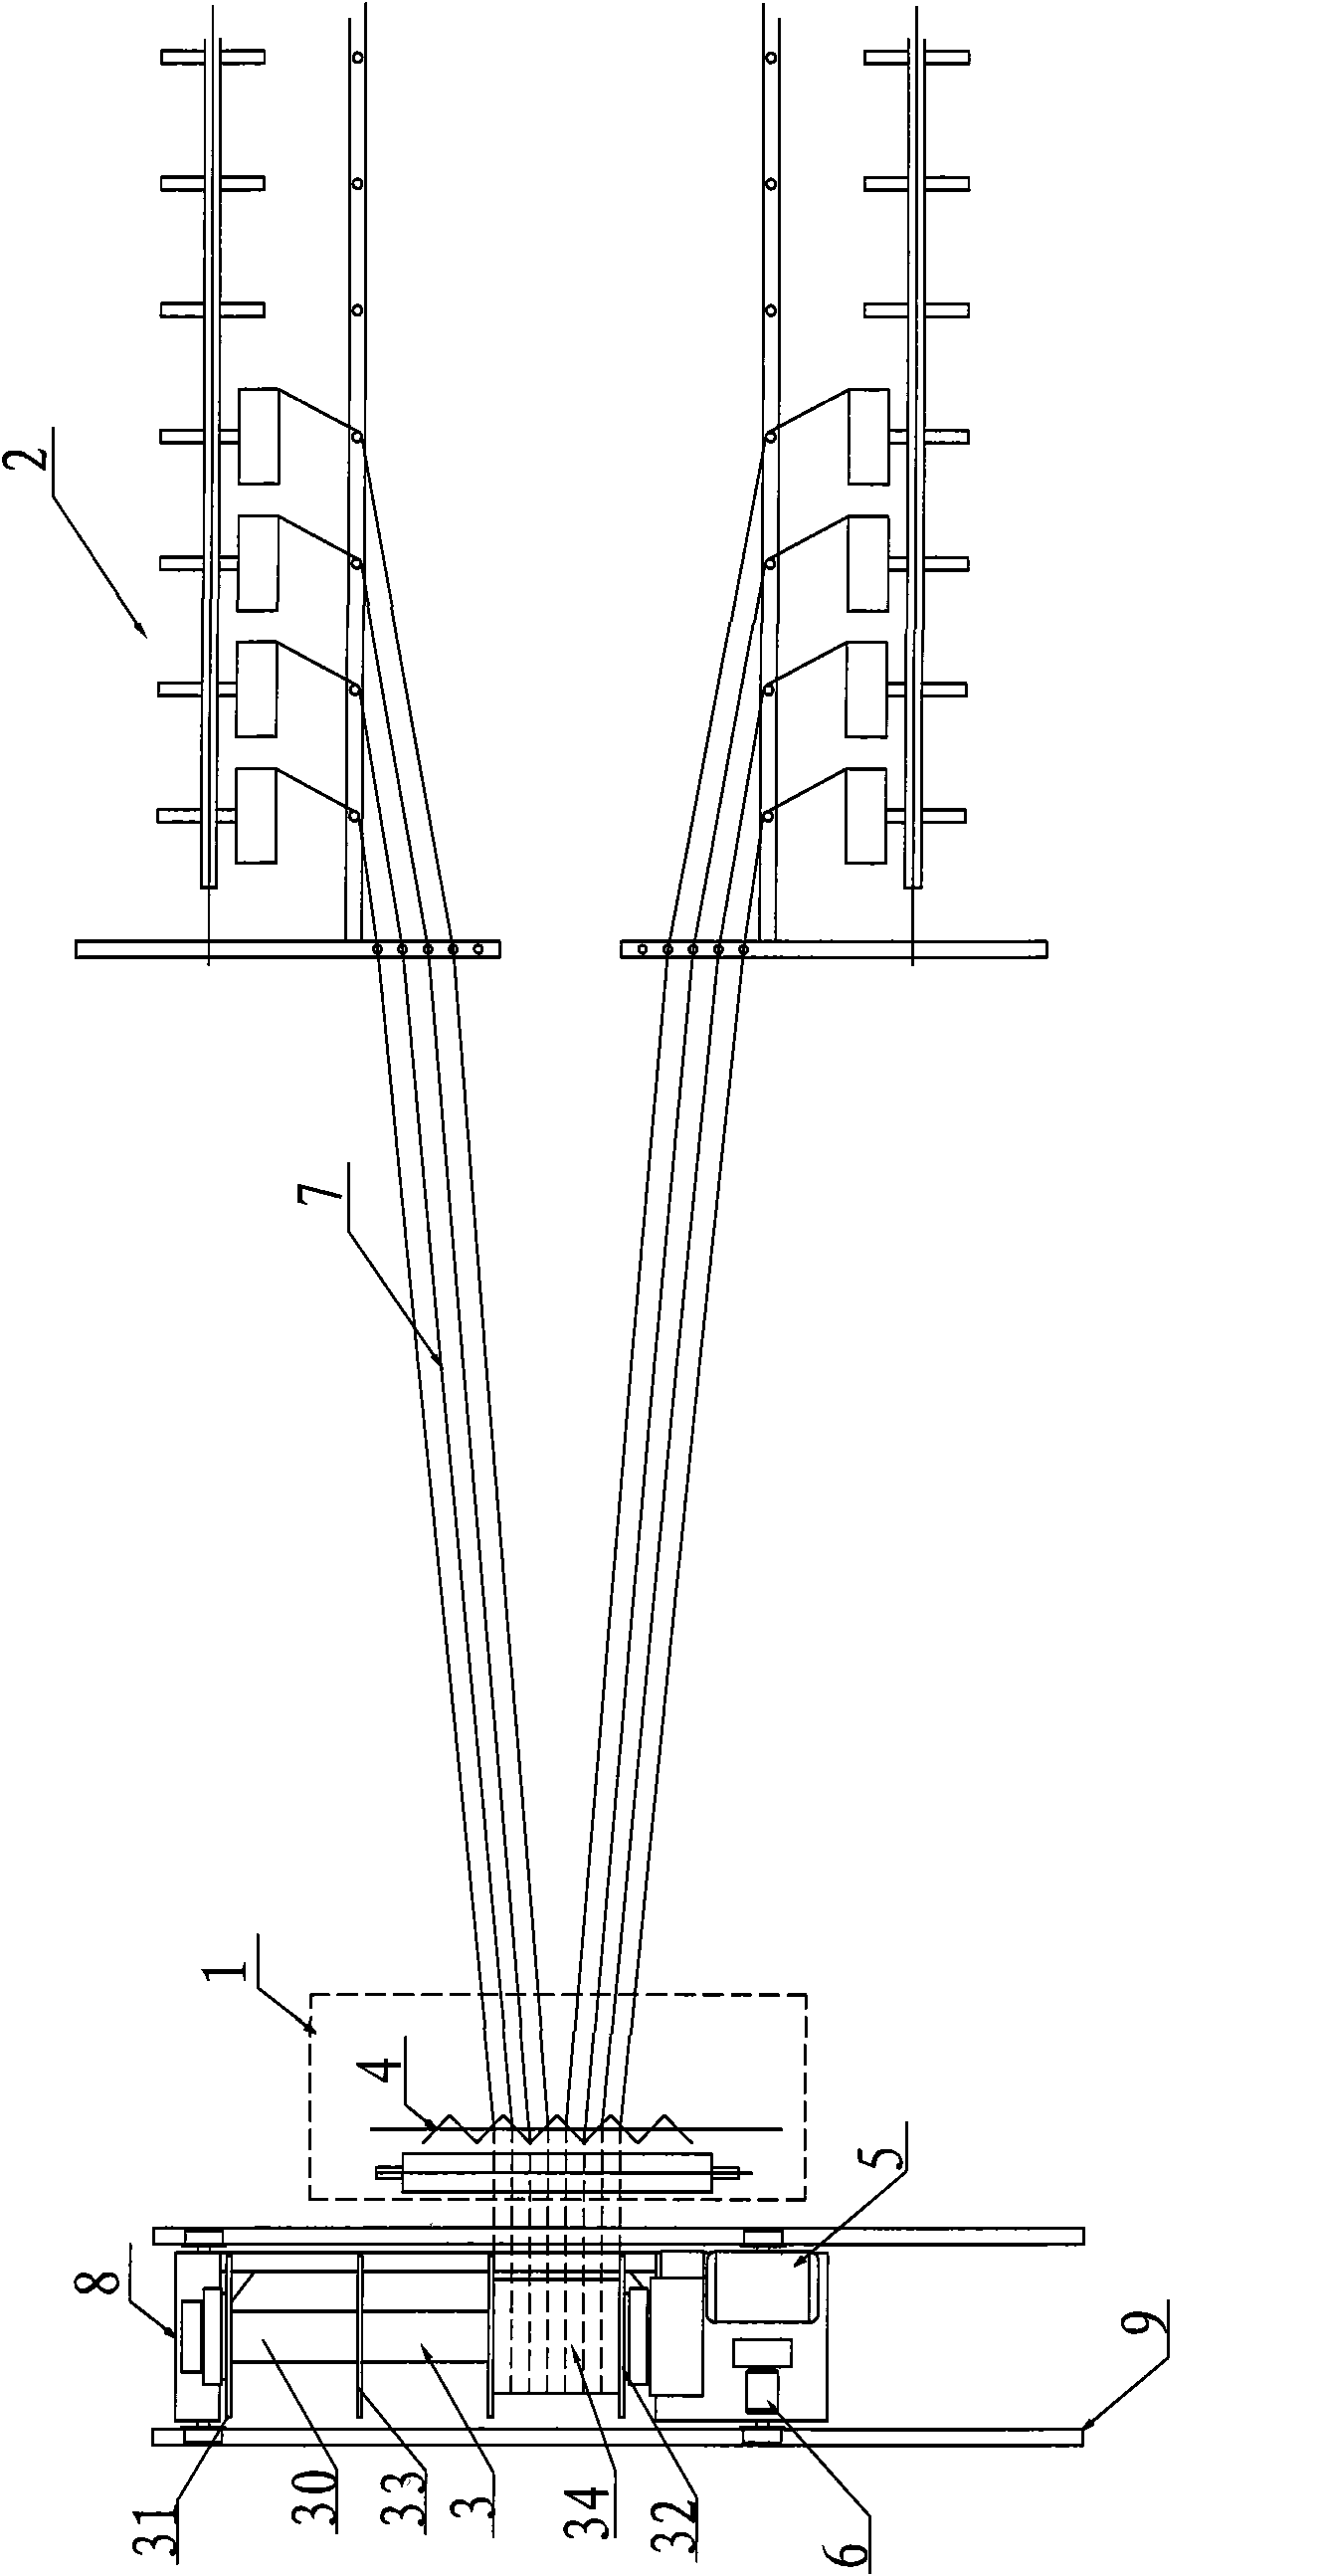 Warping apparatus and warping shaft